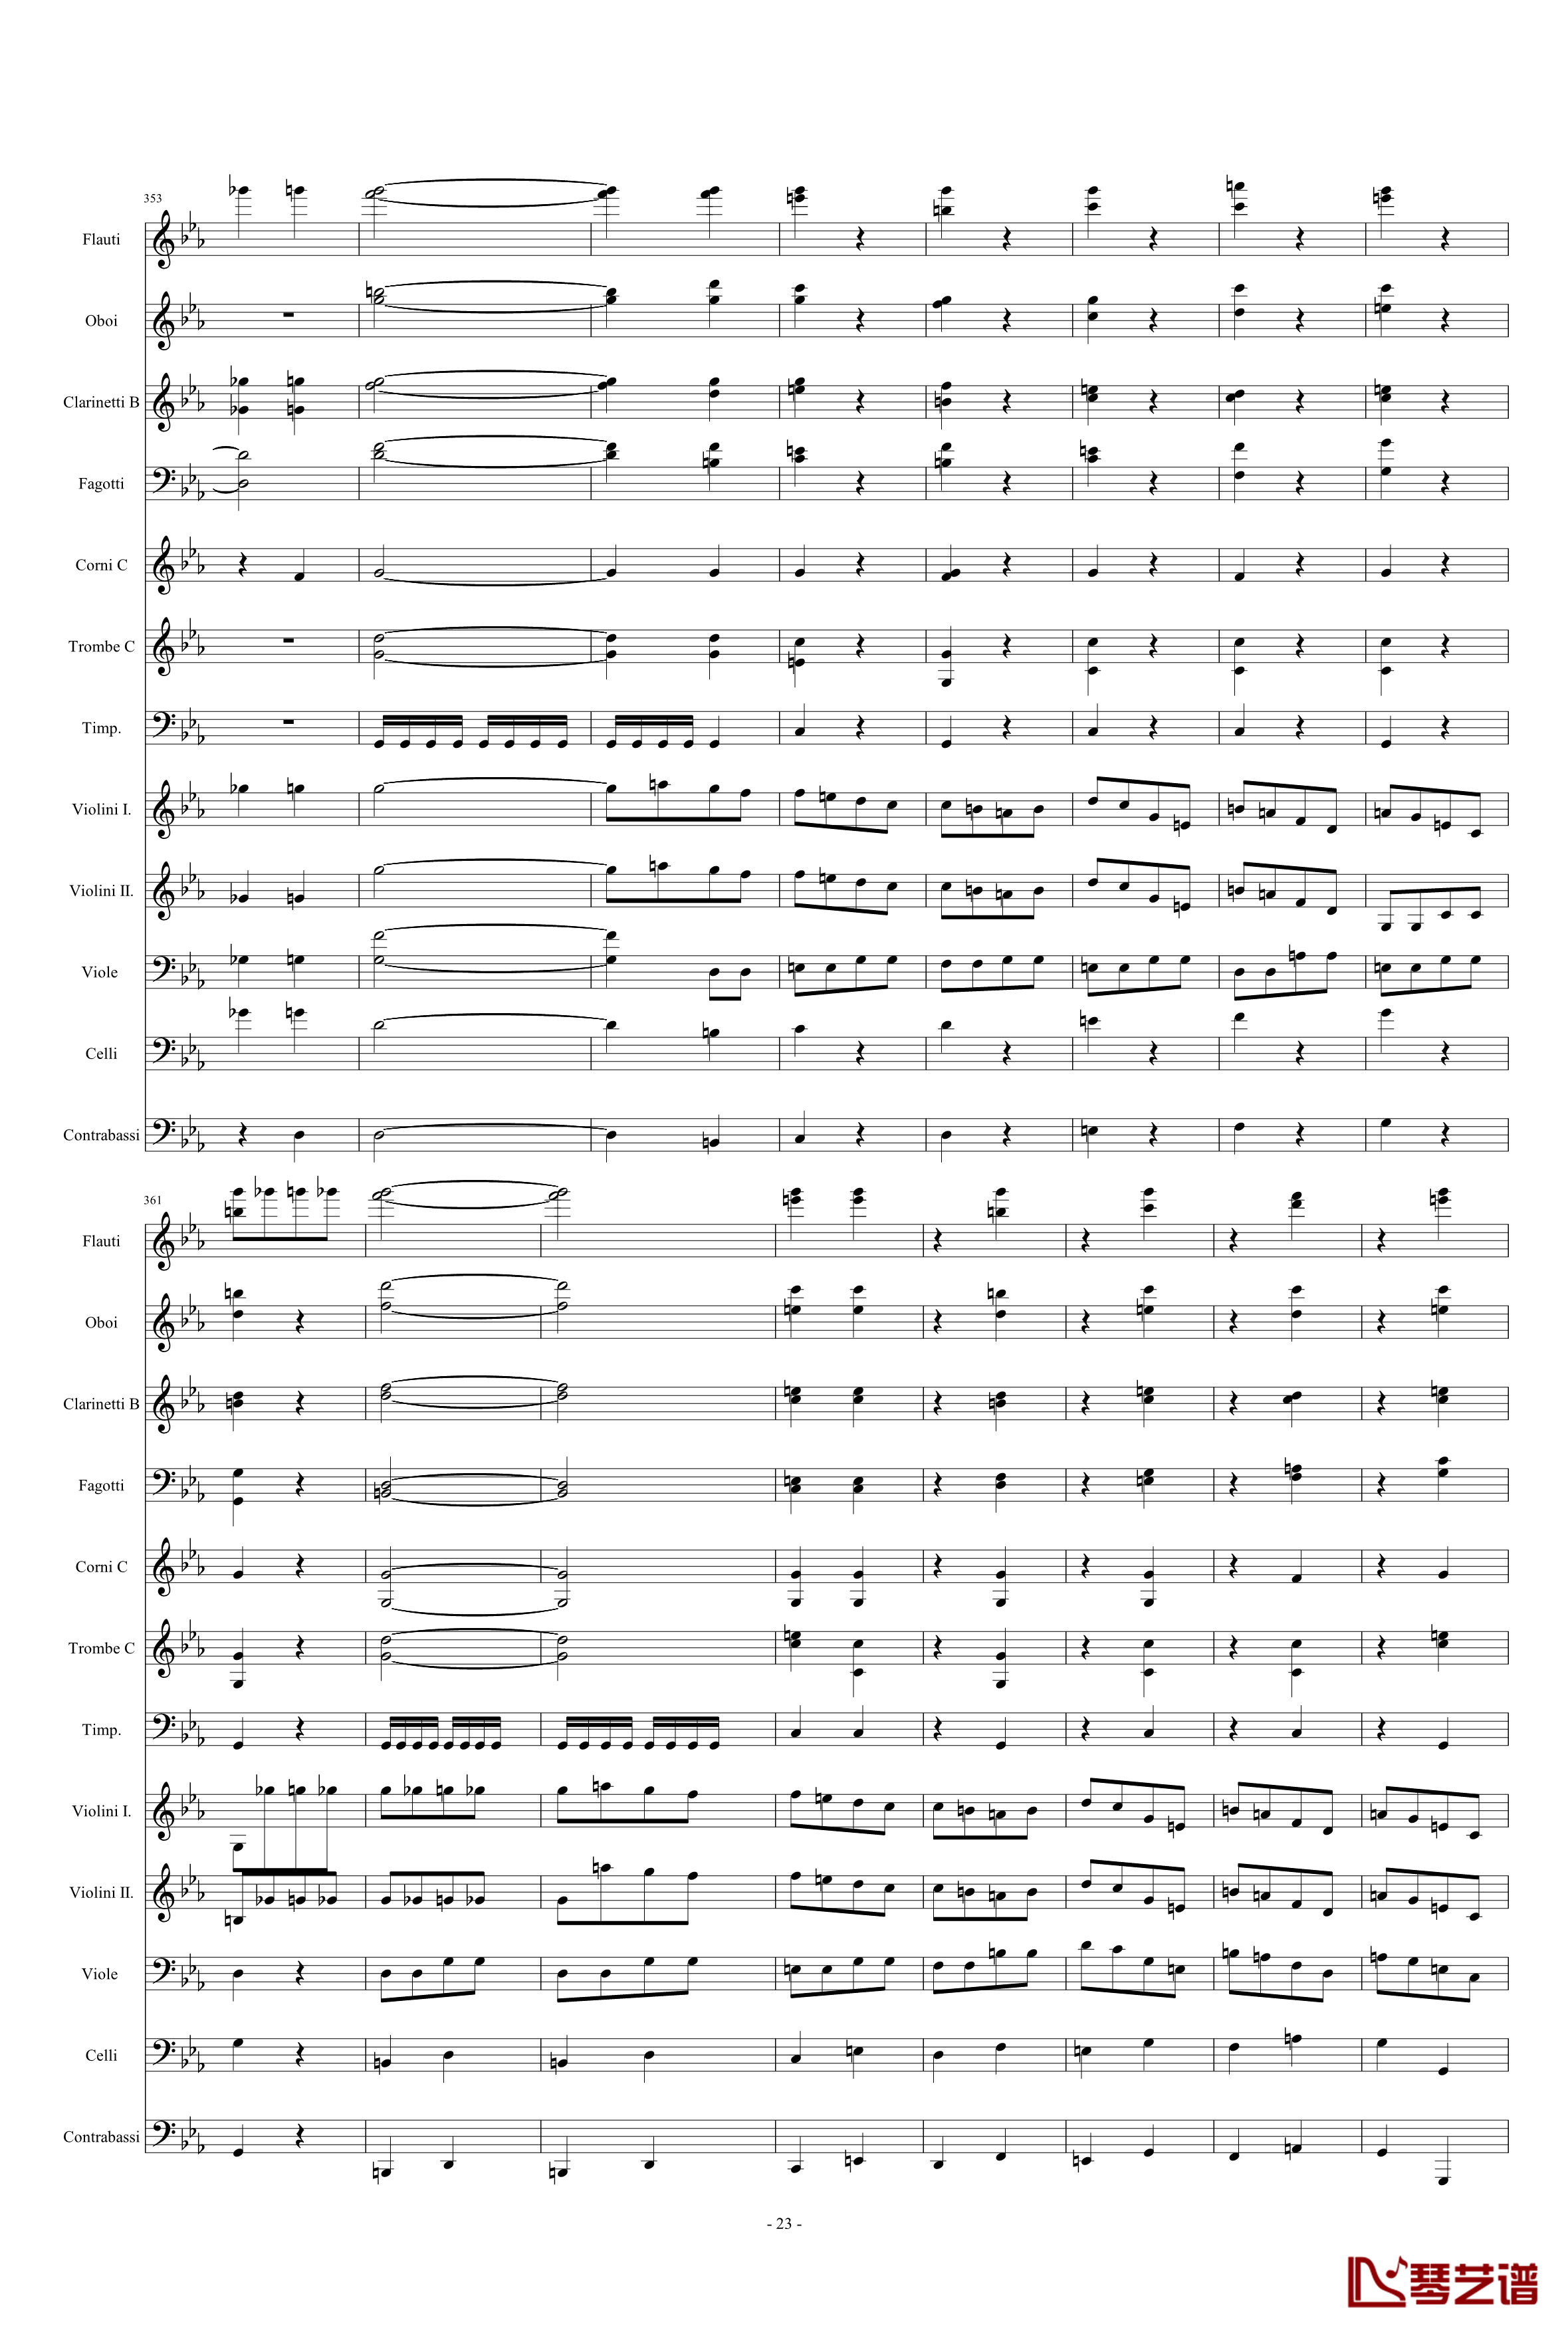 命运交响曲钢琴谱-潦草-贝多芬-beethoven23